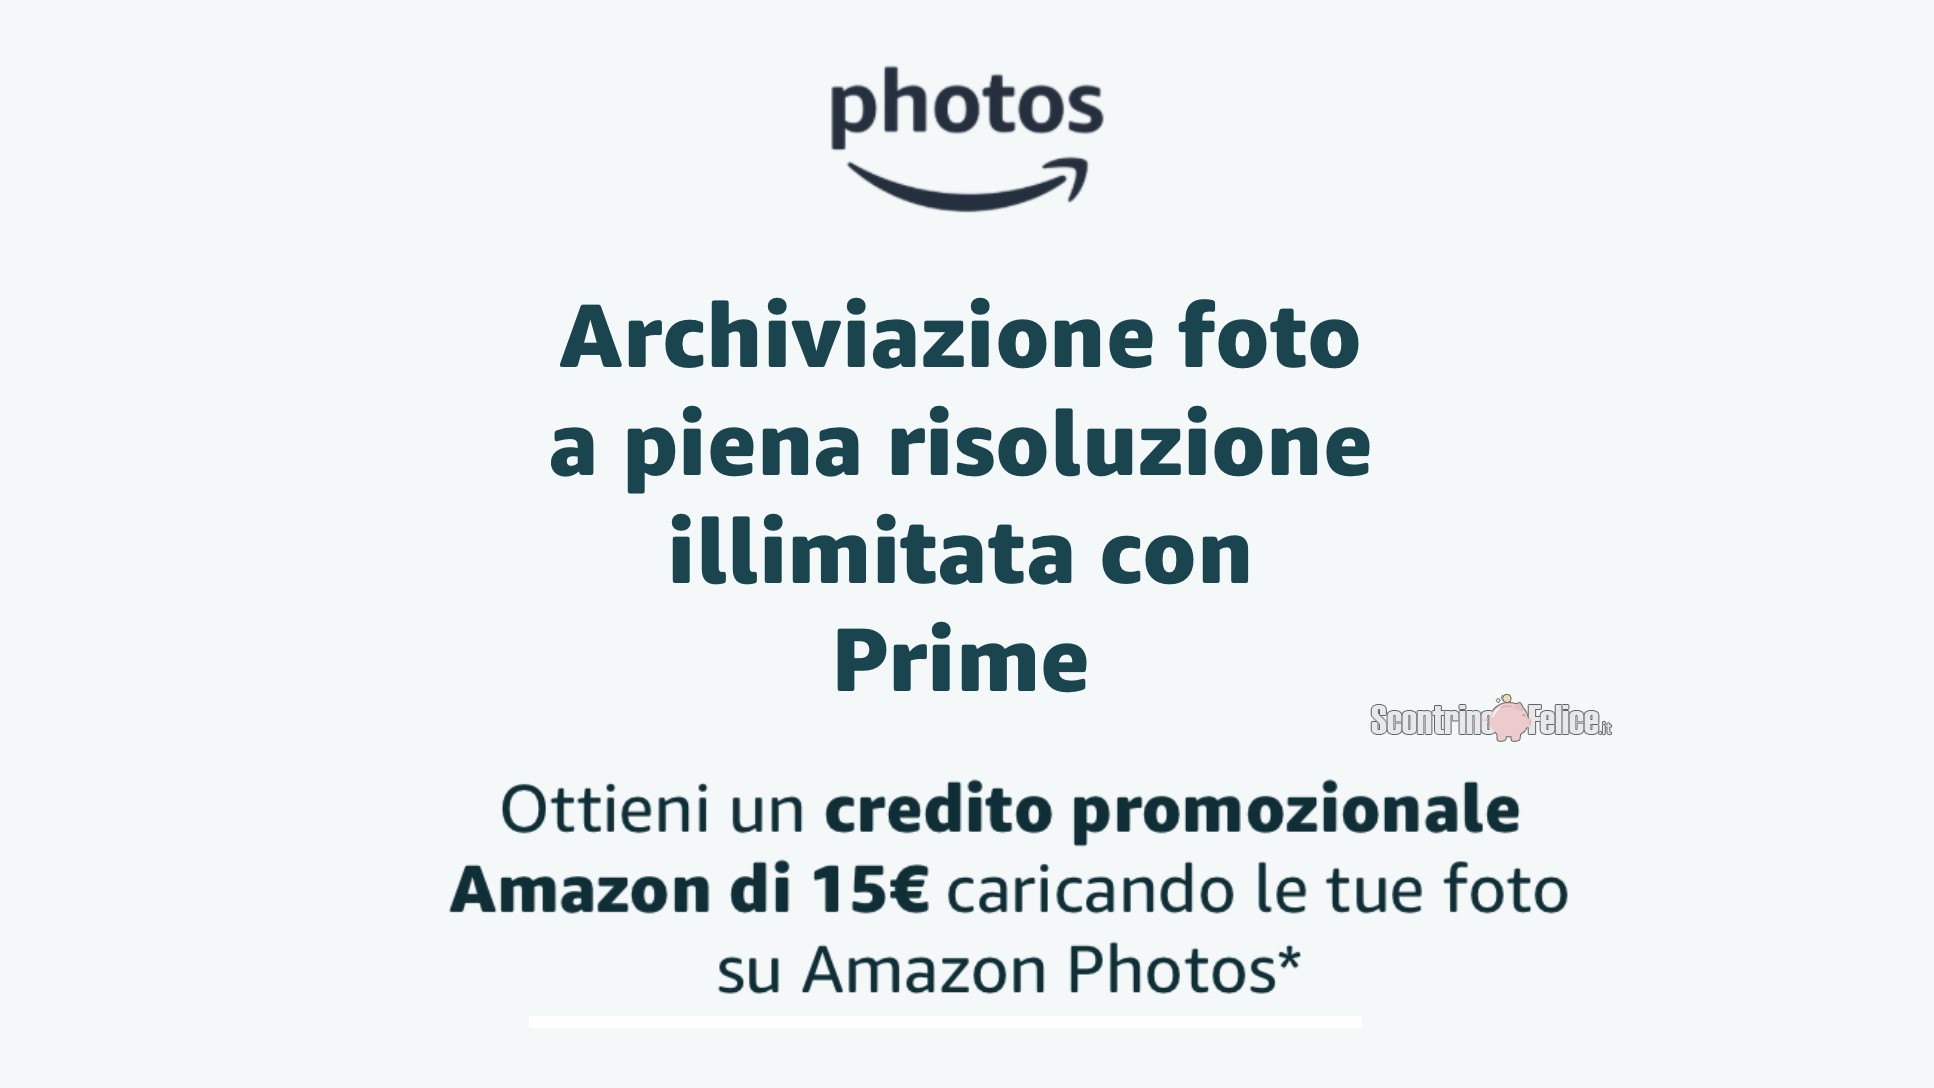 Ricevi un buono Amazon da 15 euro con Amazon Photos